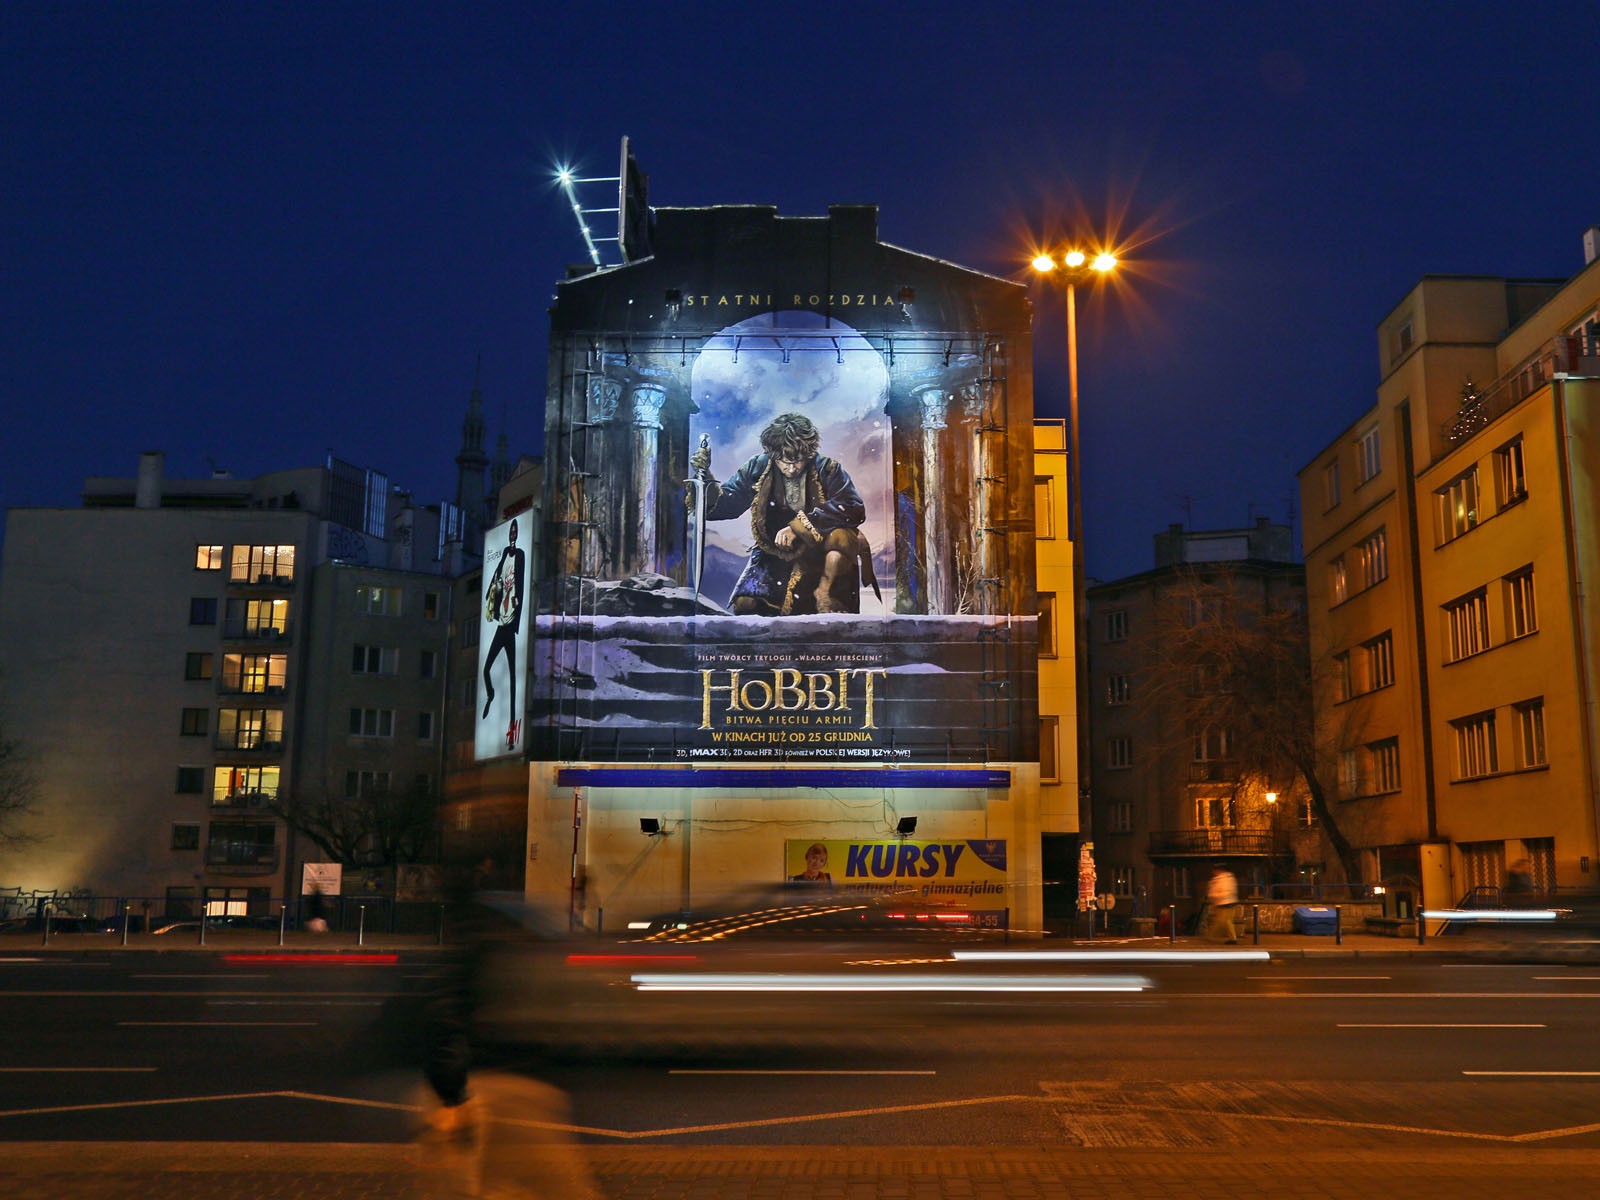 Film Der Hobbit: Die Schlacht der fünf Heere Großflächige Werbung Forum Films in Warschau | Film Der Hobbit: Die Schlacht der fünf Heere | Portfolio